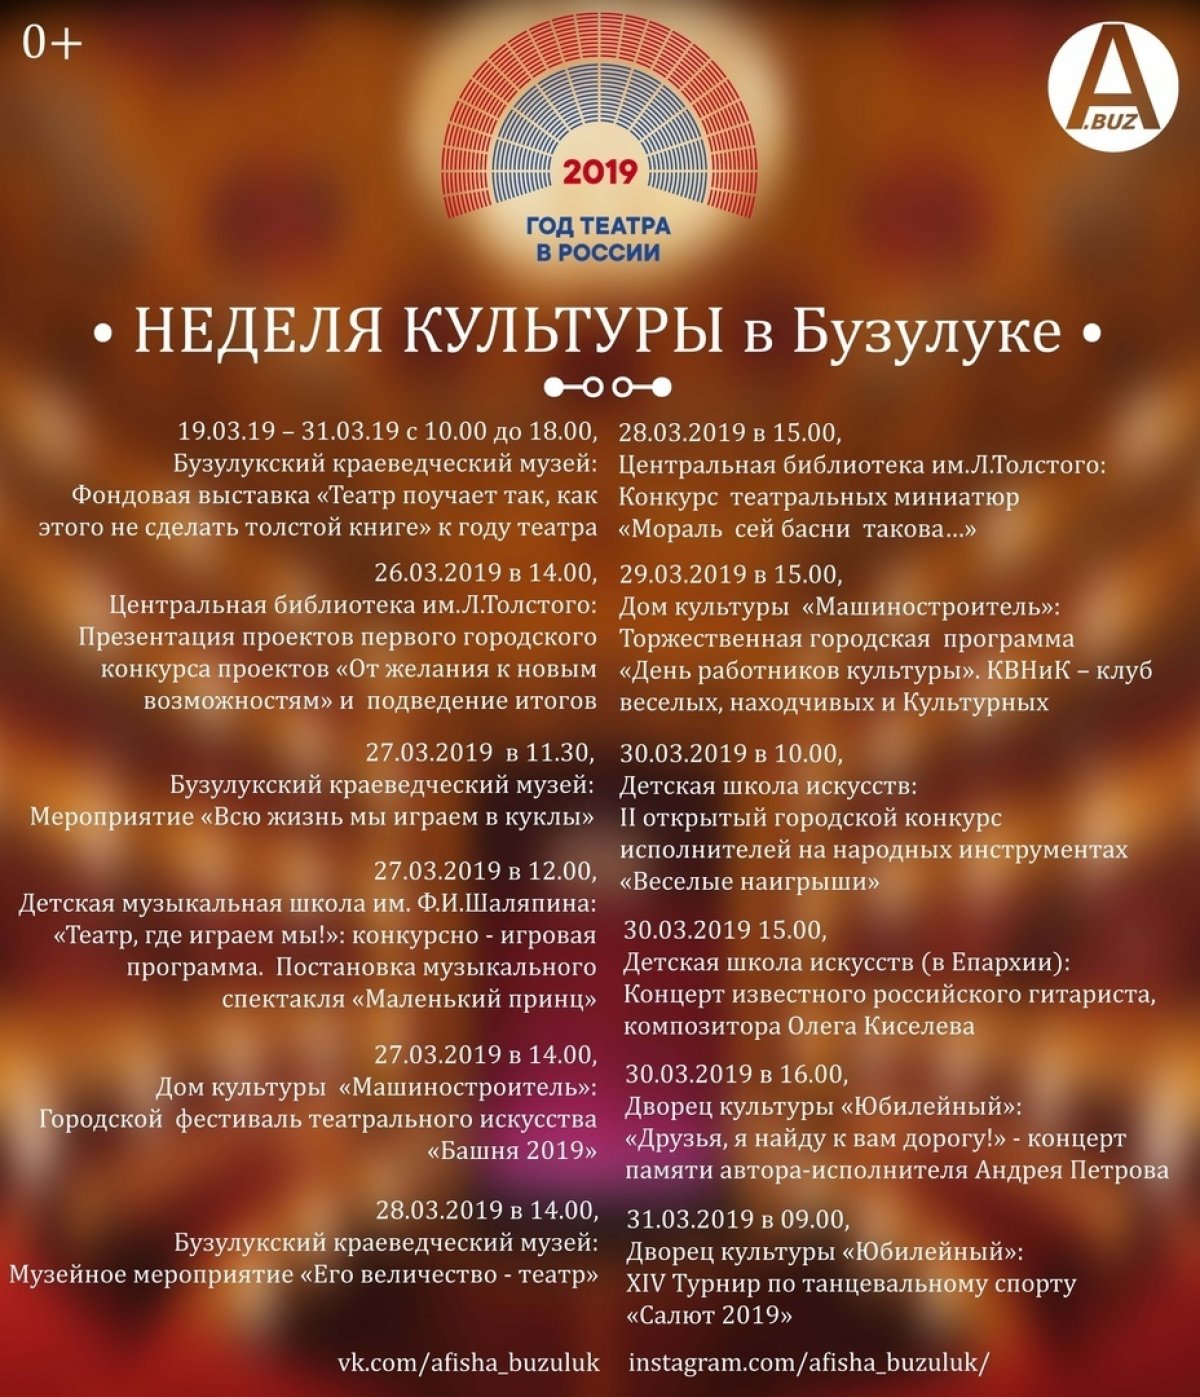 С 25 по 31 марта в Бузулуке будет проходить культурно-просветительская акция «Неделя культуры». Её основная тема - Год театра в России. 